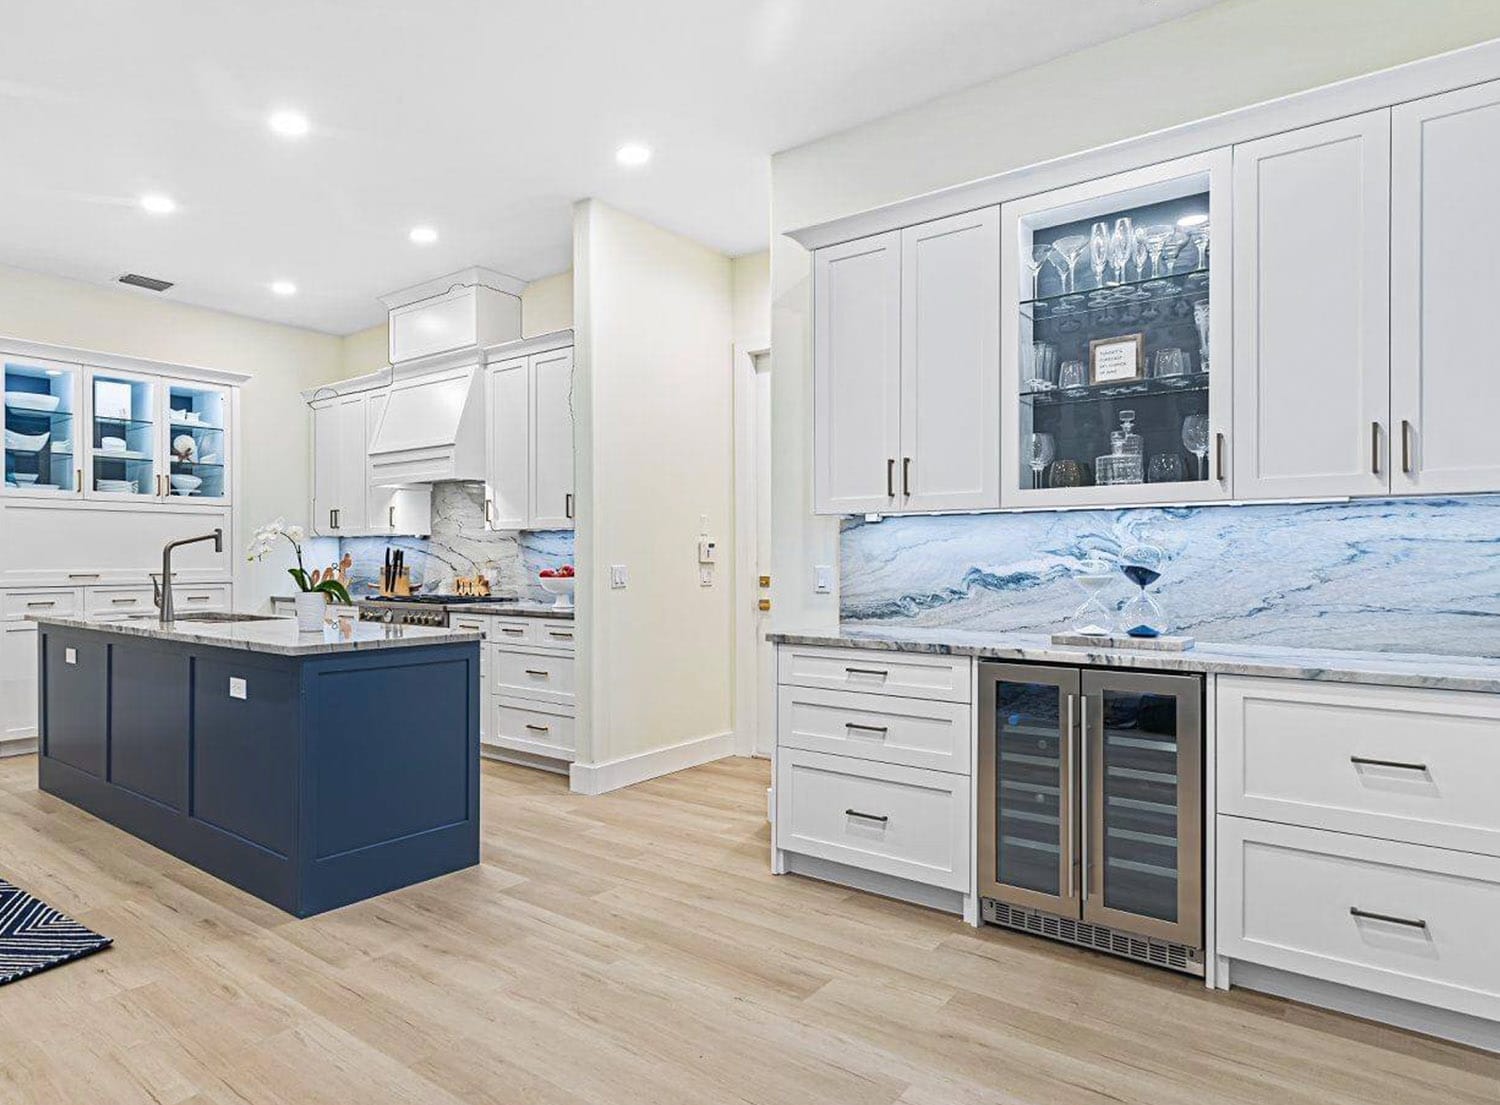 Coastal Design kitchens to inspire you to go coastal.